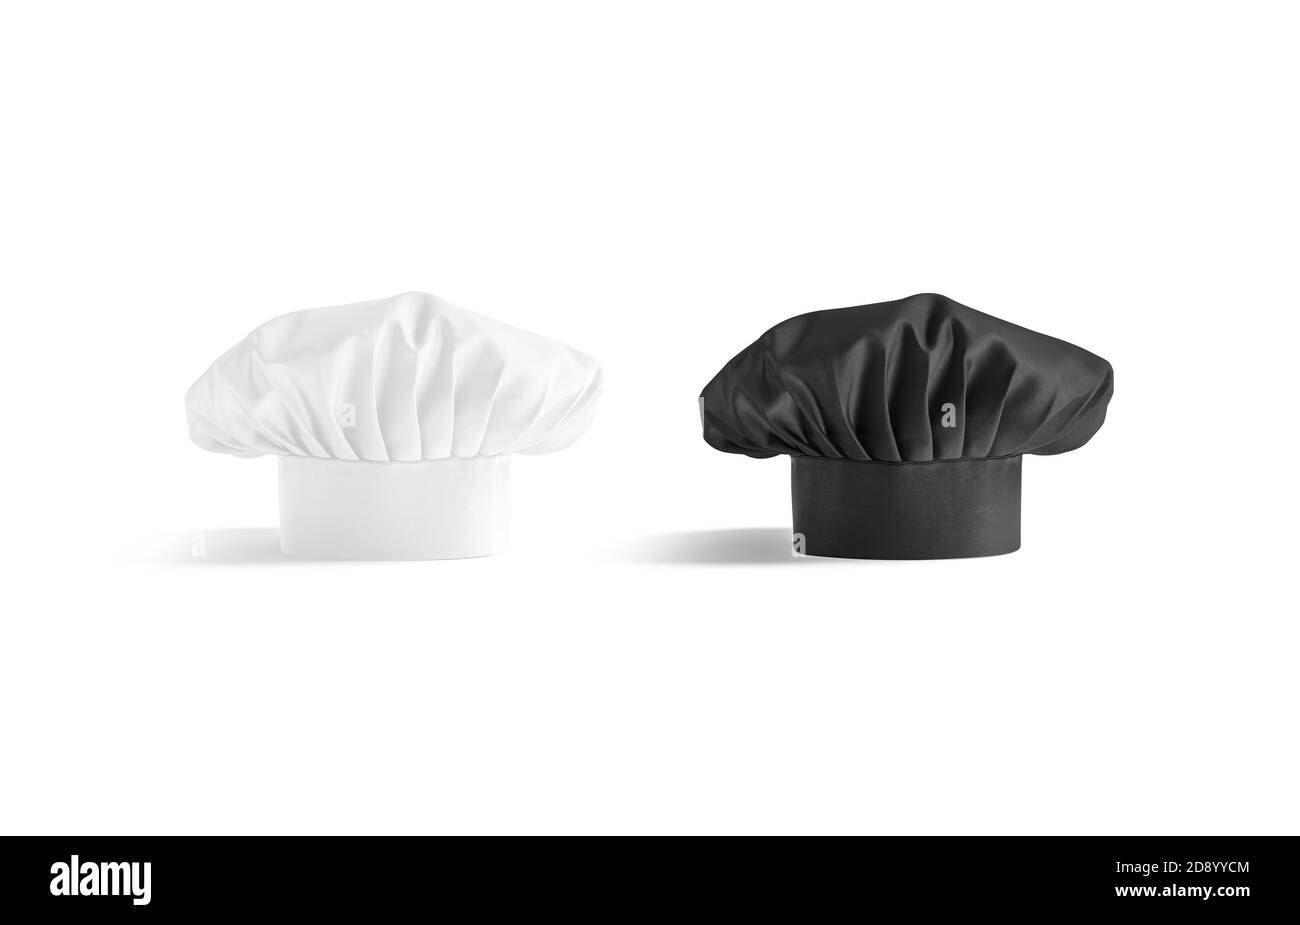 Blank schwarz und weiß toque Chef Hut mockup Stand, isoliert Stockfoto